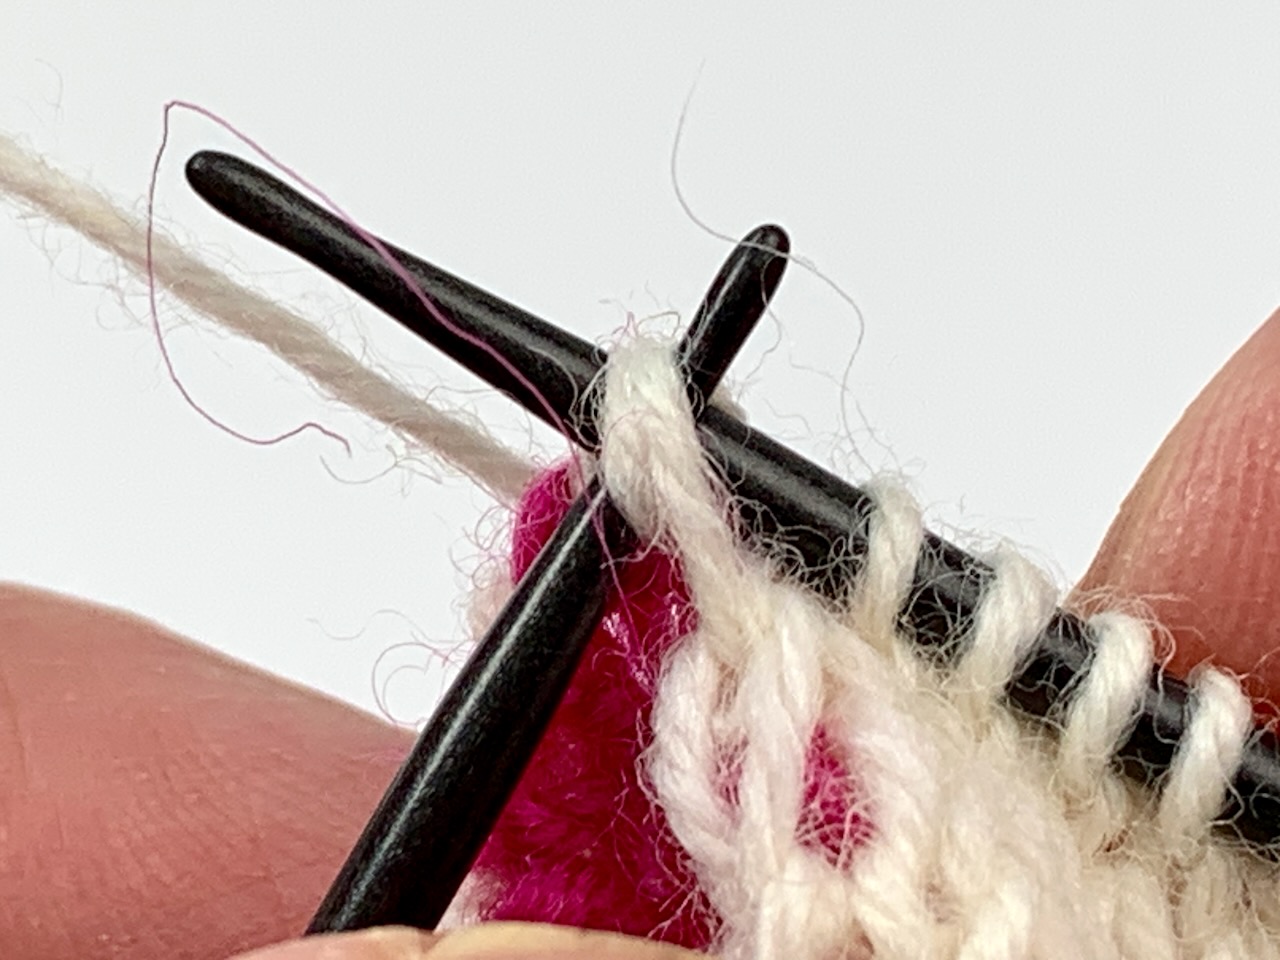 Socken stricken mit zwei Nadeln: Auf der Vorderseite werden die Knötchen der Rückseite mit den Randmaschen zusammengestrickt.